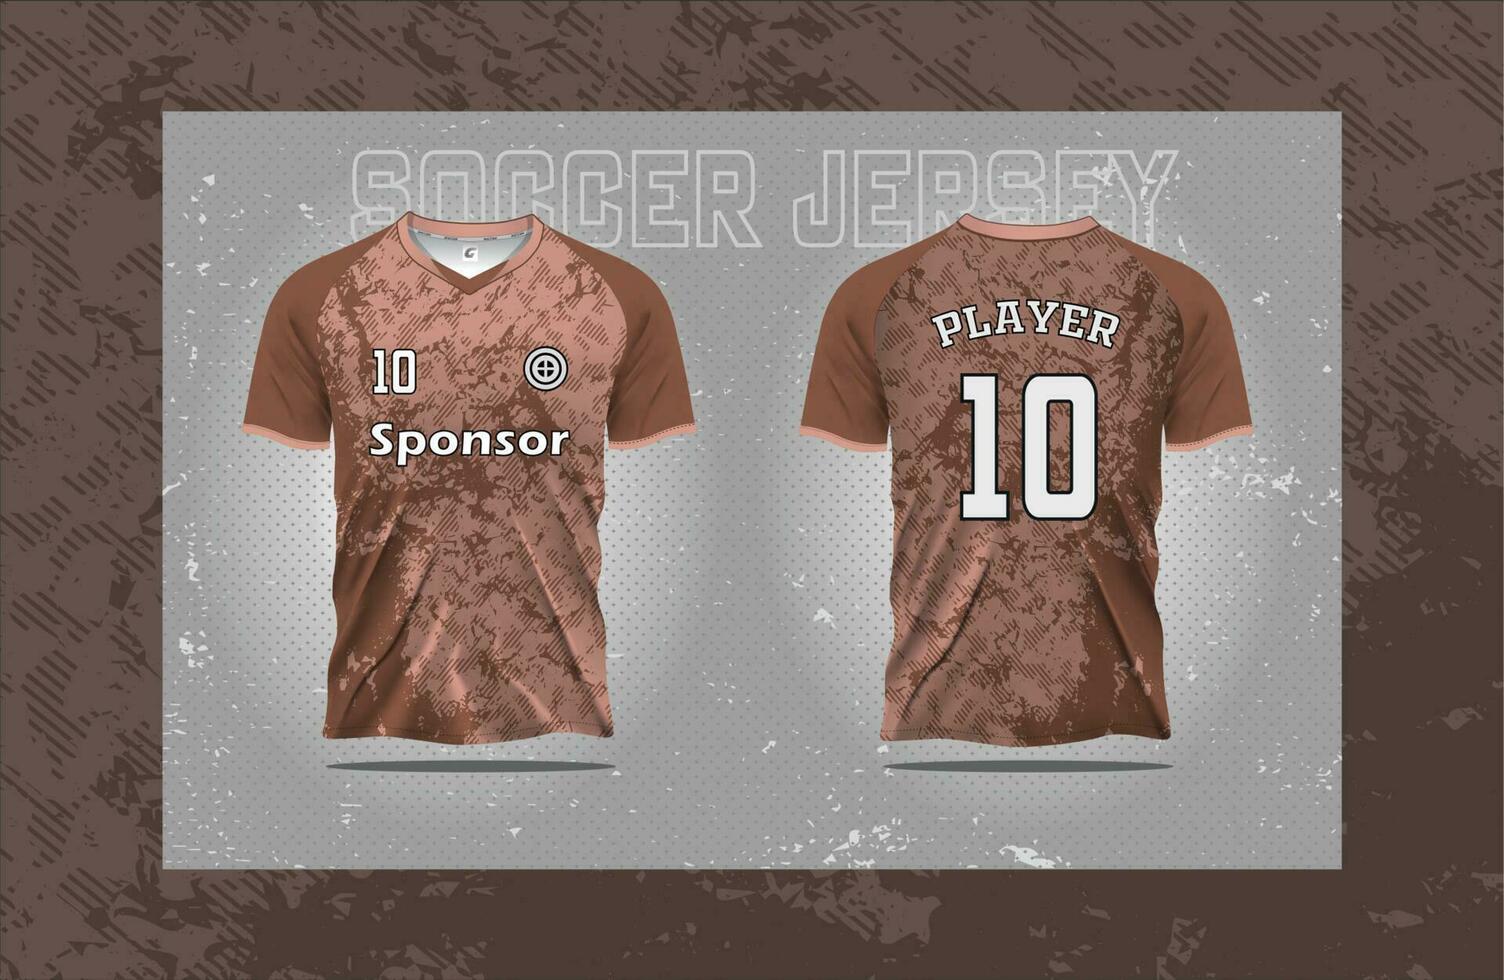 modern voetbal Jersey Amerikaans voetbal sport t overhemd ontwerp geschikt voor racen, voetbal, gaming en e sport- vector illustratie en dubbelzijdig mockup ontwerp